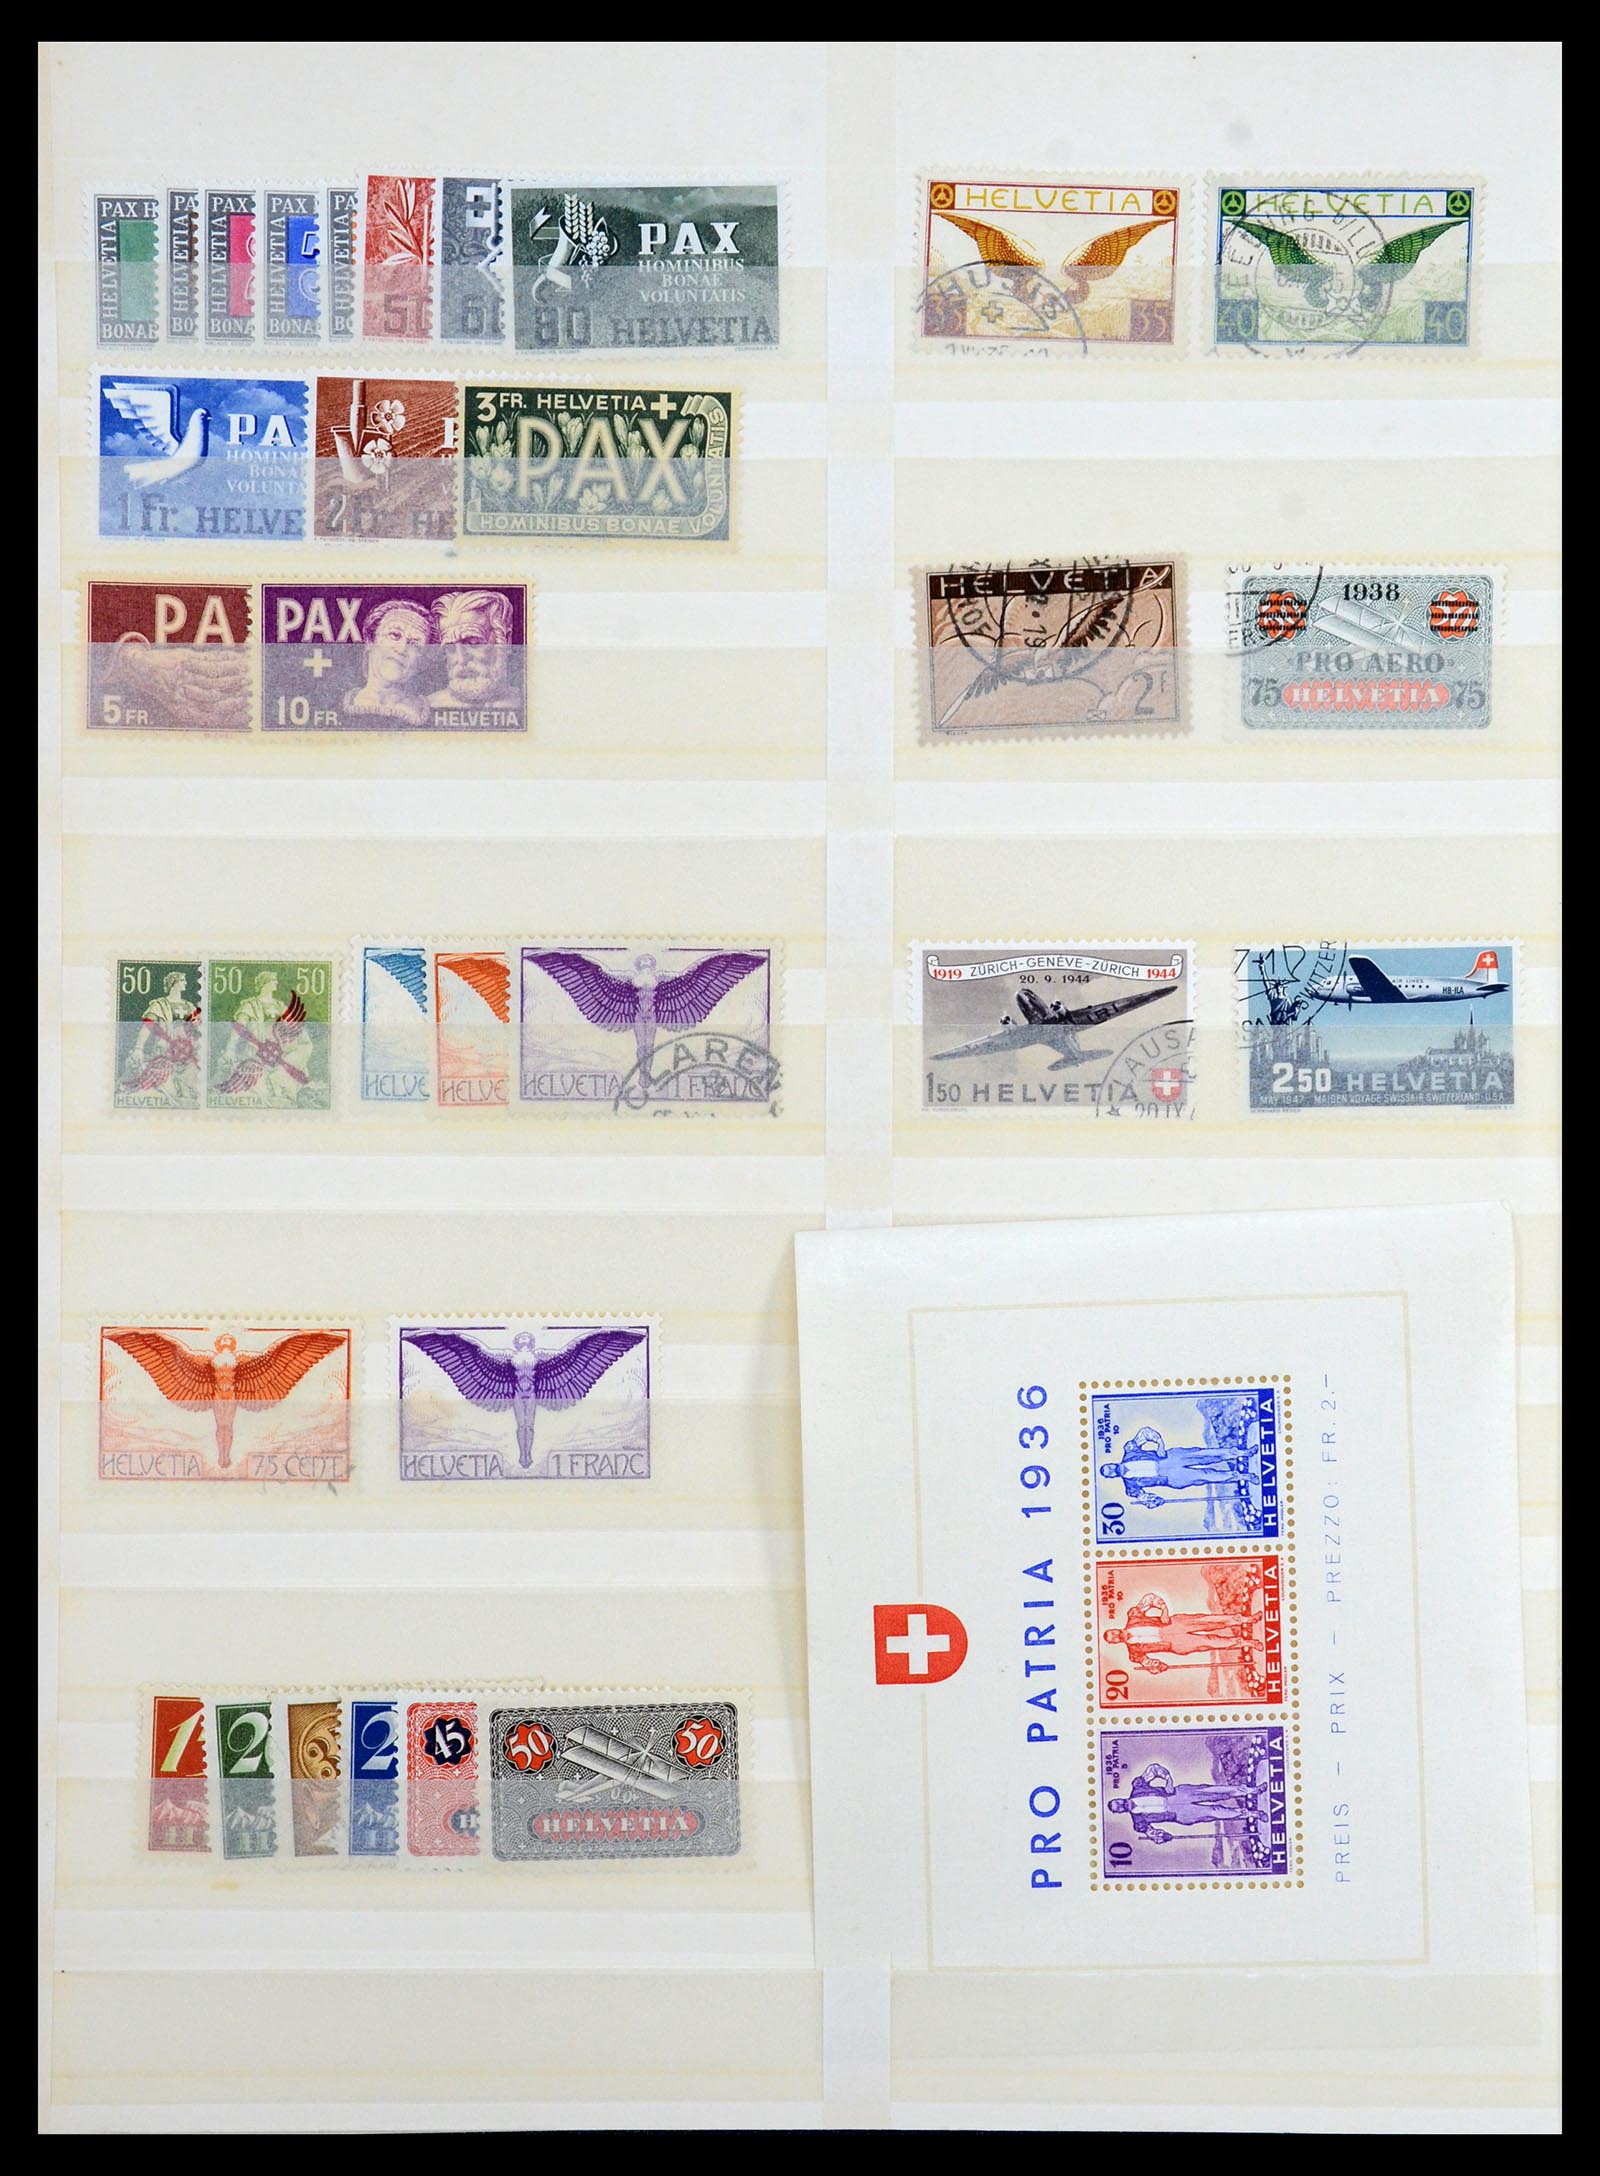 35165 002 - Postzegelverzameling 35165 Zwitserland en Luxemburg toppers.